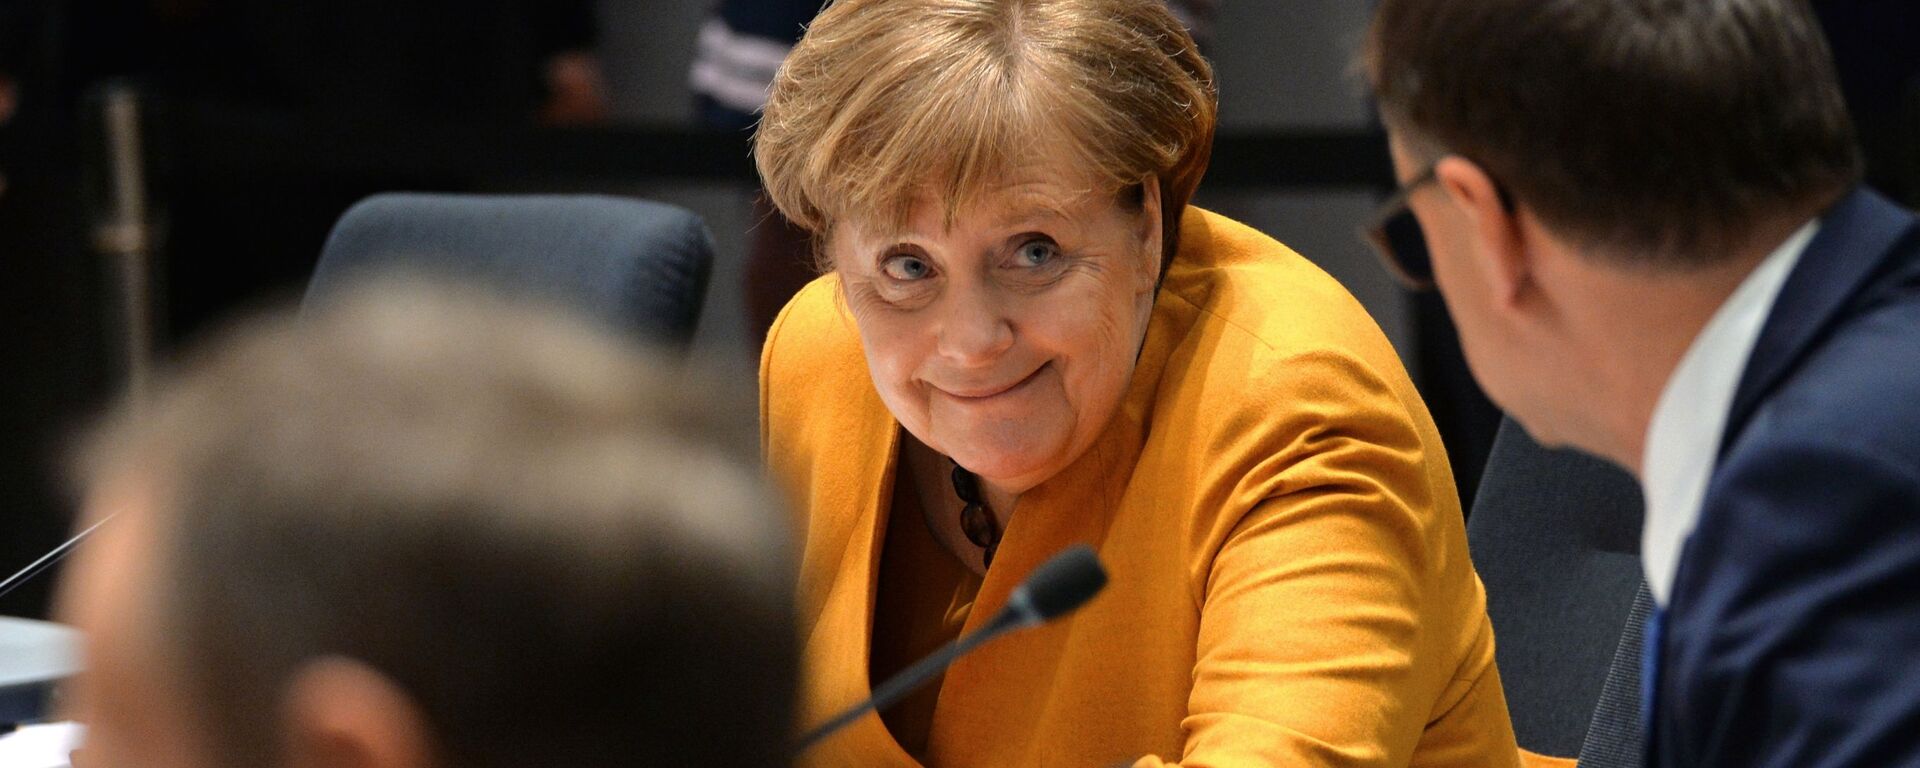  Федеральный канцлер Германии Ангела Меркель на саммите глав государств и правительств Евросоюза в Брюсселе - Sputnik Узбекистан, 1920, 22.01.2021